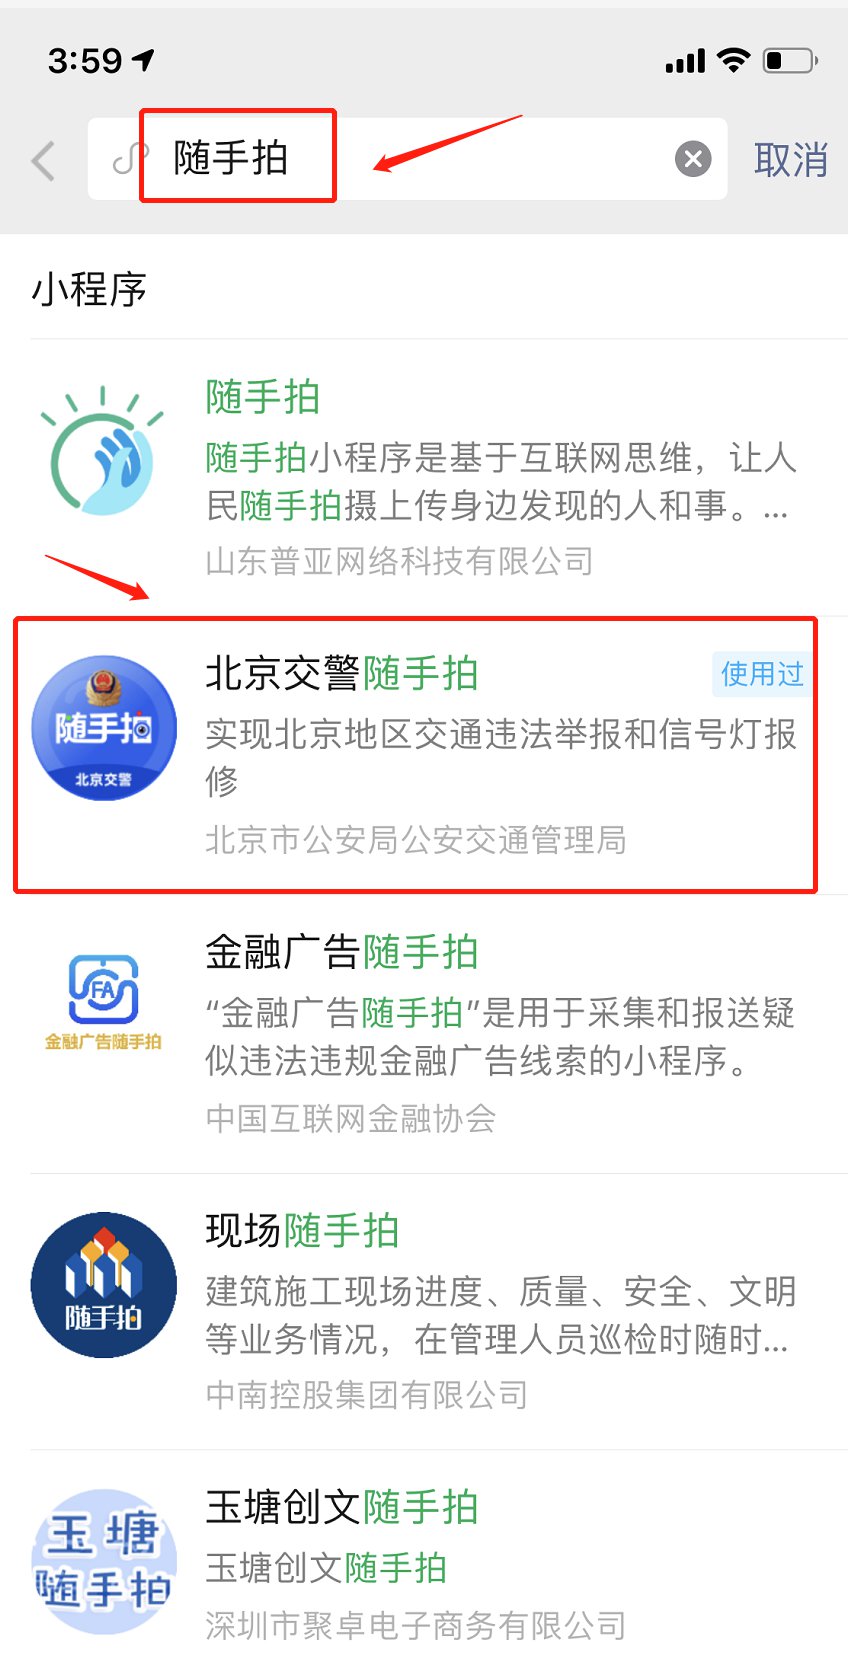 北京怎么网上举报交通违法行为?三种方式举报